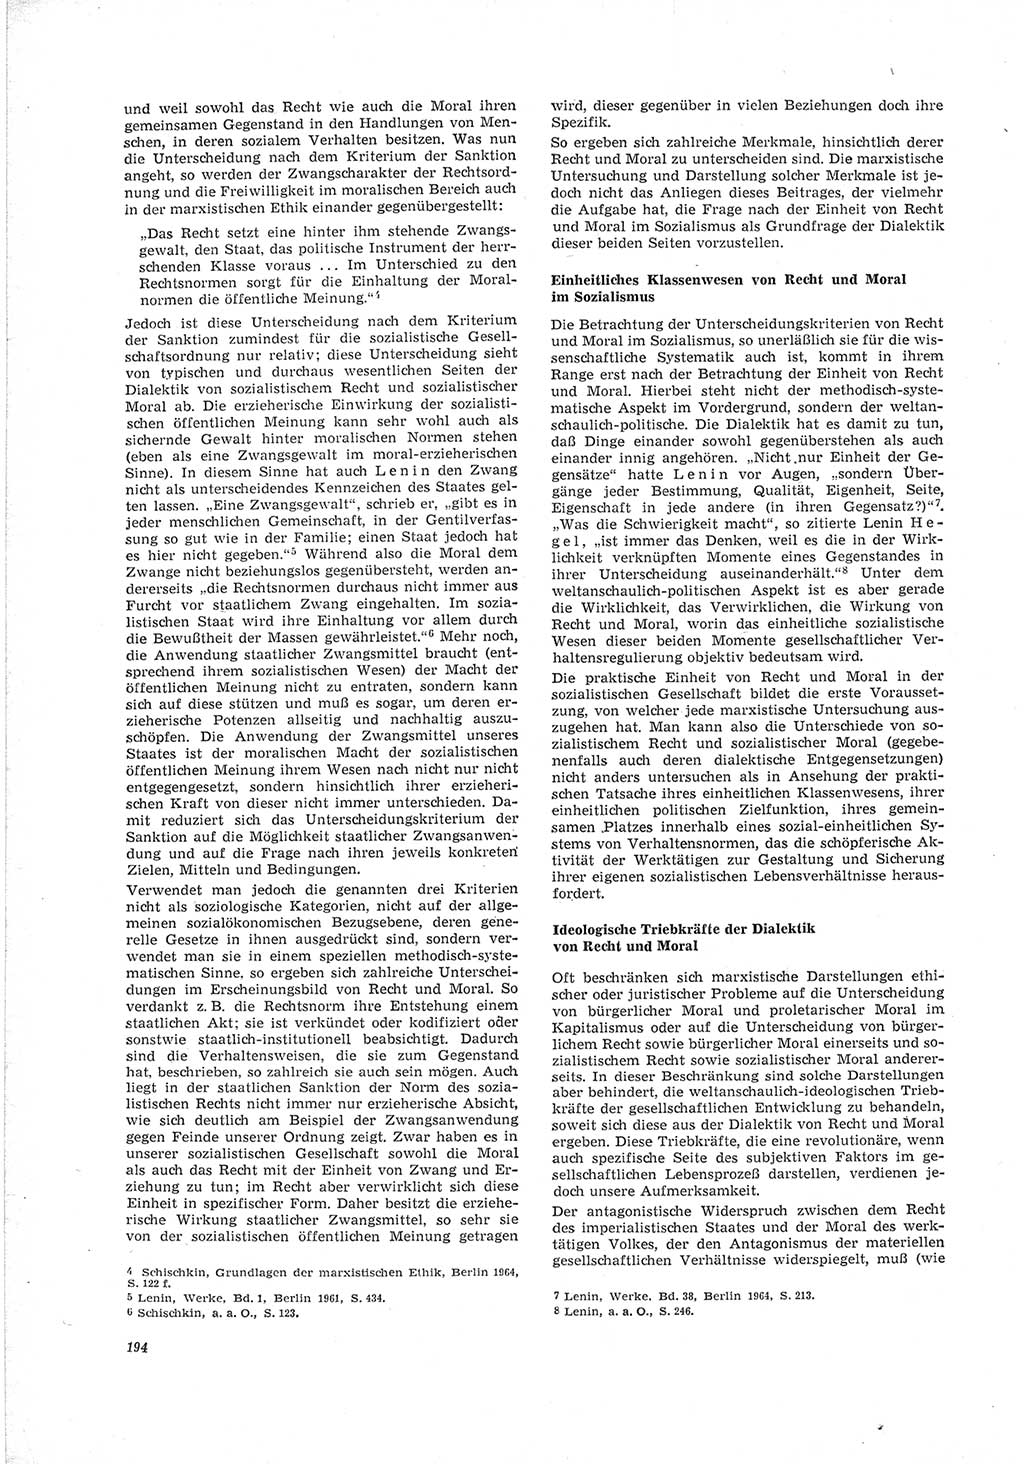 Neue Justiz (NJ), Zeitschrift für Recht und Rechtswissenschaft [Deutsche Demokratische Republik (DDR)], 23. Jahrgang 1969, Seite 194 (NJ DDR 1969, S. 194)